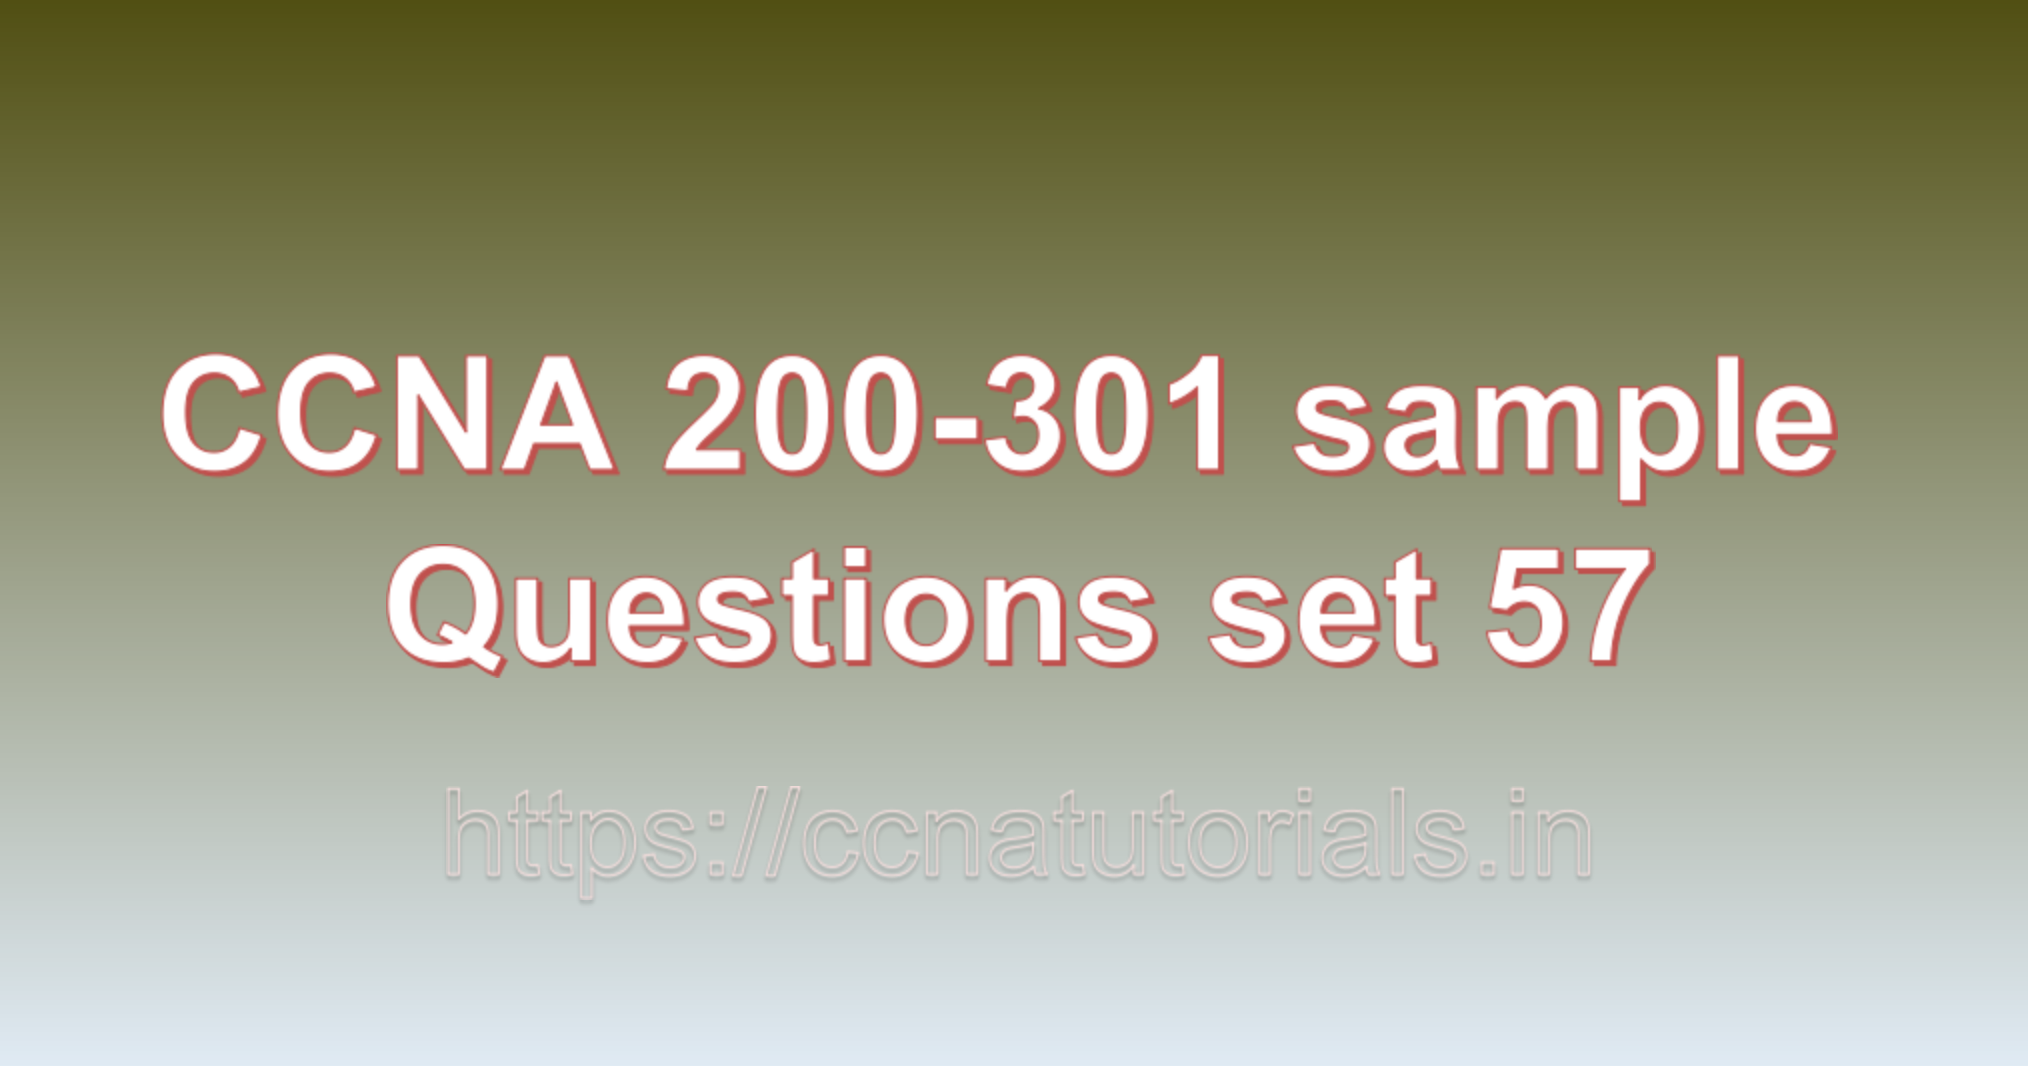 ccna sample questions set 57, ccna tutorials, CCNA Exam, ccna